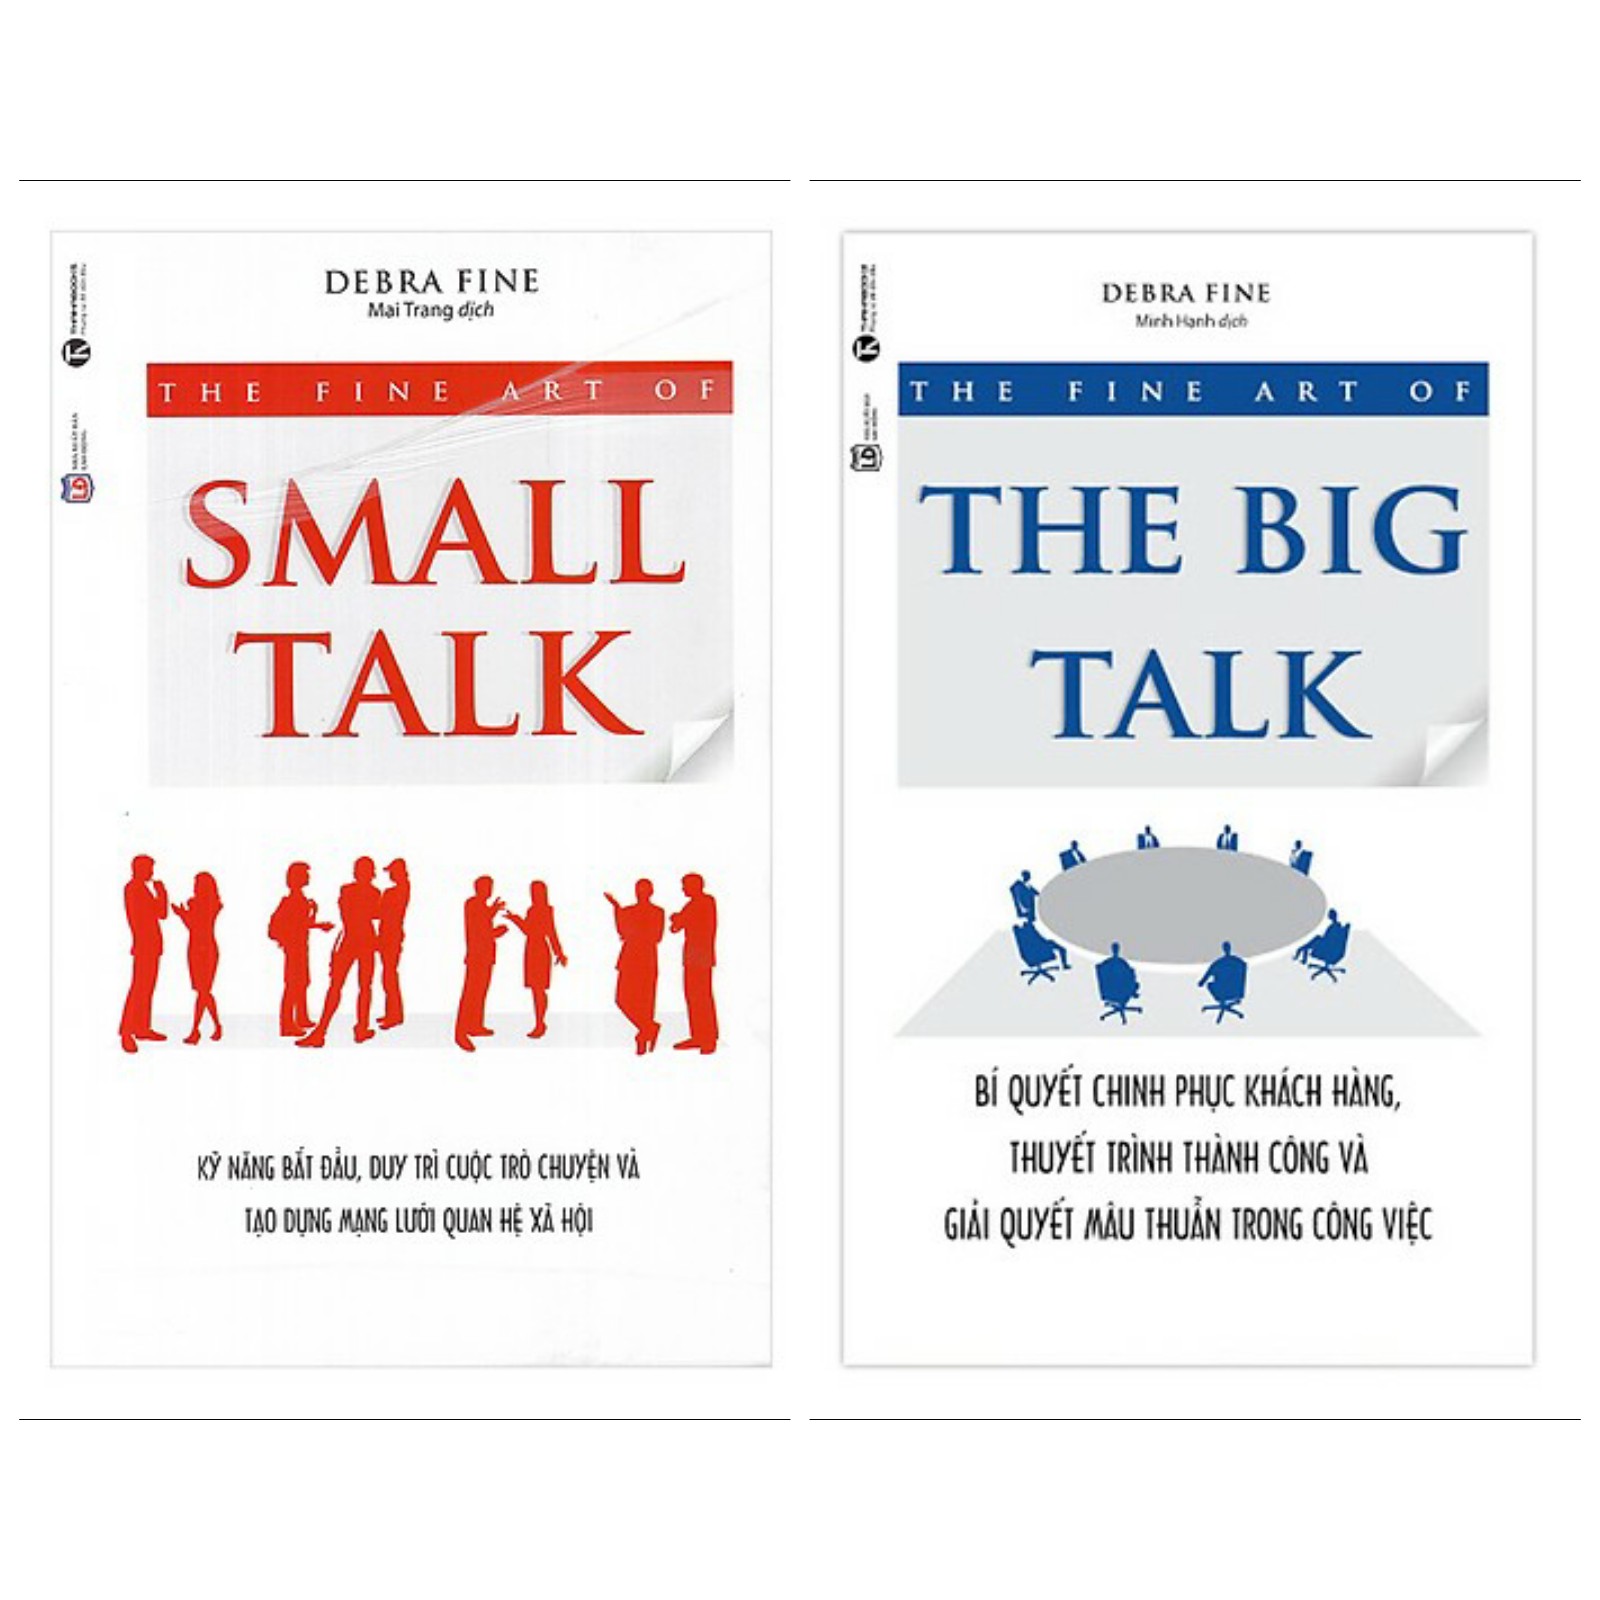 Combo Sách Kinh Tế Hay Nhất: The Fine Art Of Small Talk - Kỹ Năng Bắt Đầu, Duy Trì Cuộc Trò Chuyện Và Tạo Dựng Mạng Lưới Quan Hệ Xã Hội + The Fine Art Of The Big Talk - Bí Quyết Chinh Phục Khách Hàng, Thuyết Trình Thành Công Và Giải Quyết Mâu Thuẫn Trong Công Việc - (Top Sách Bán Chạy Nhất / Tặng Kèm Bookmark Greenlife)